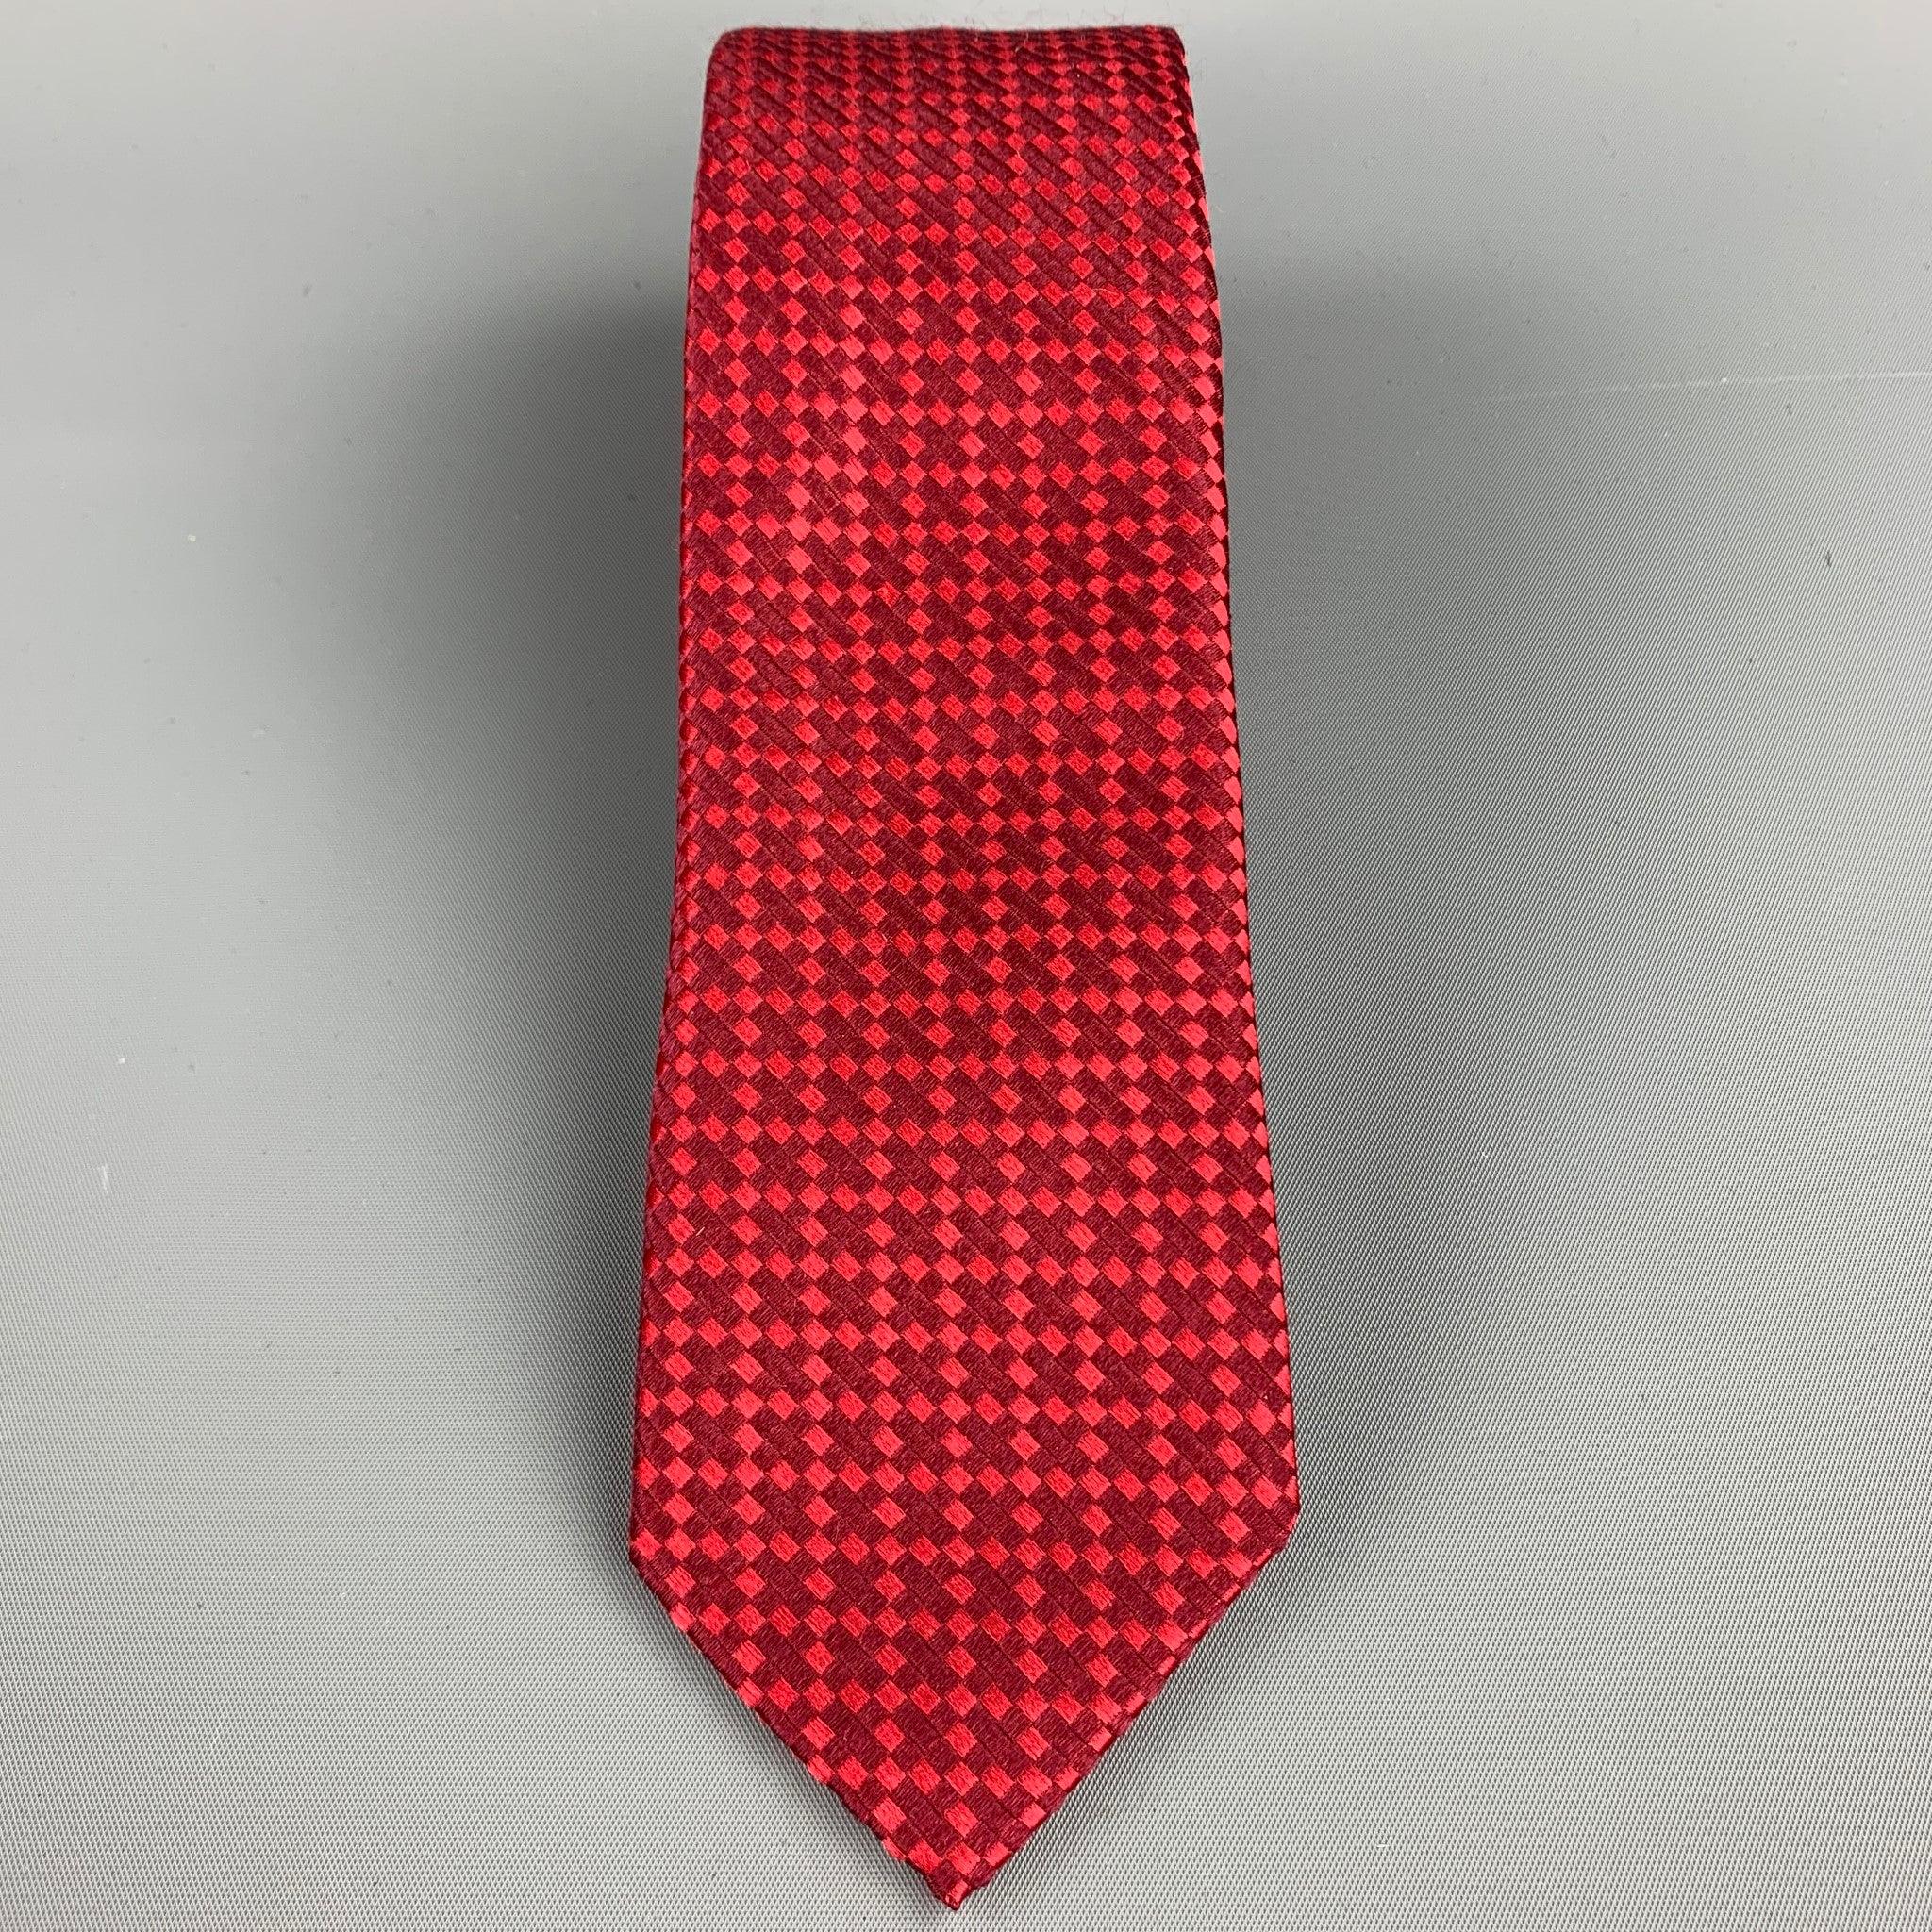 Die CHRISTIAN LACROIX Krawatte ist aus roter Seide mit Rautenmuster. Hergestellt in Italien.
Sehr guter gebrauchter Zustand.
Breite: 2,5 Zoll  
  
  
 
Referenz: 106628
Kategorie: Krawatte
Mehr Details
    
Marke:  CHRISTIAN LACROIX 
Farbe: 